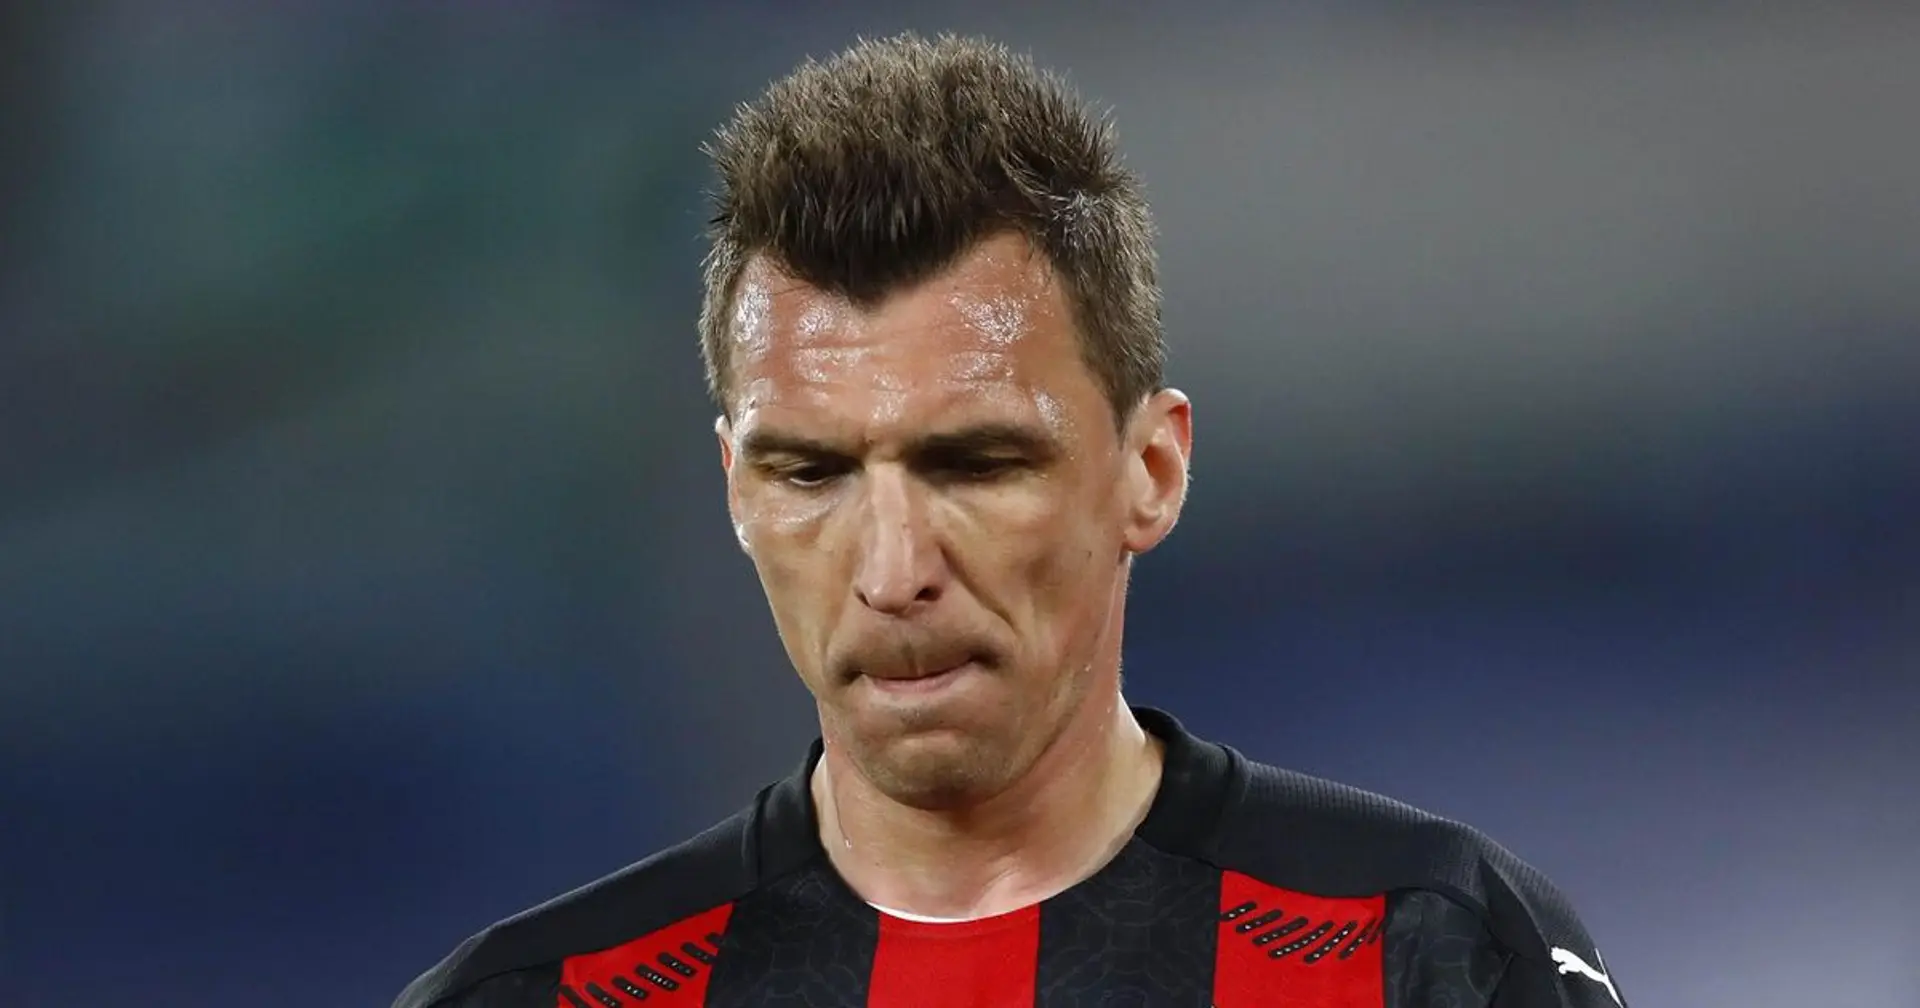 13 partite saltate e 0 gol: Mandzukic-flop e il Milan avrebbe già deciso il suo futuro